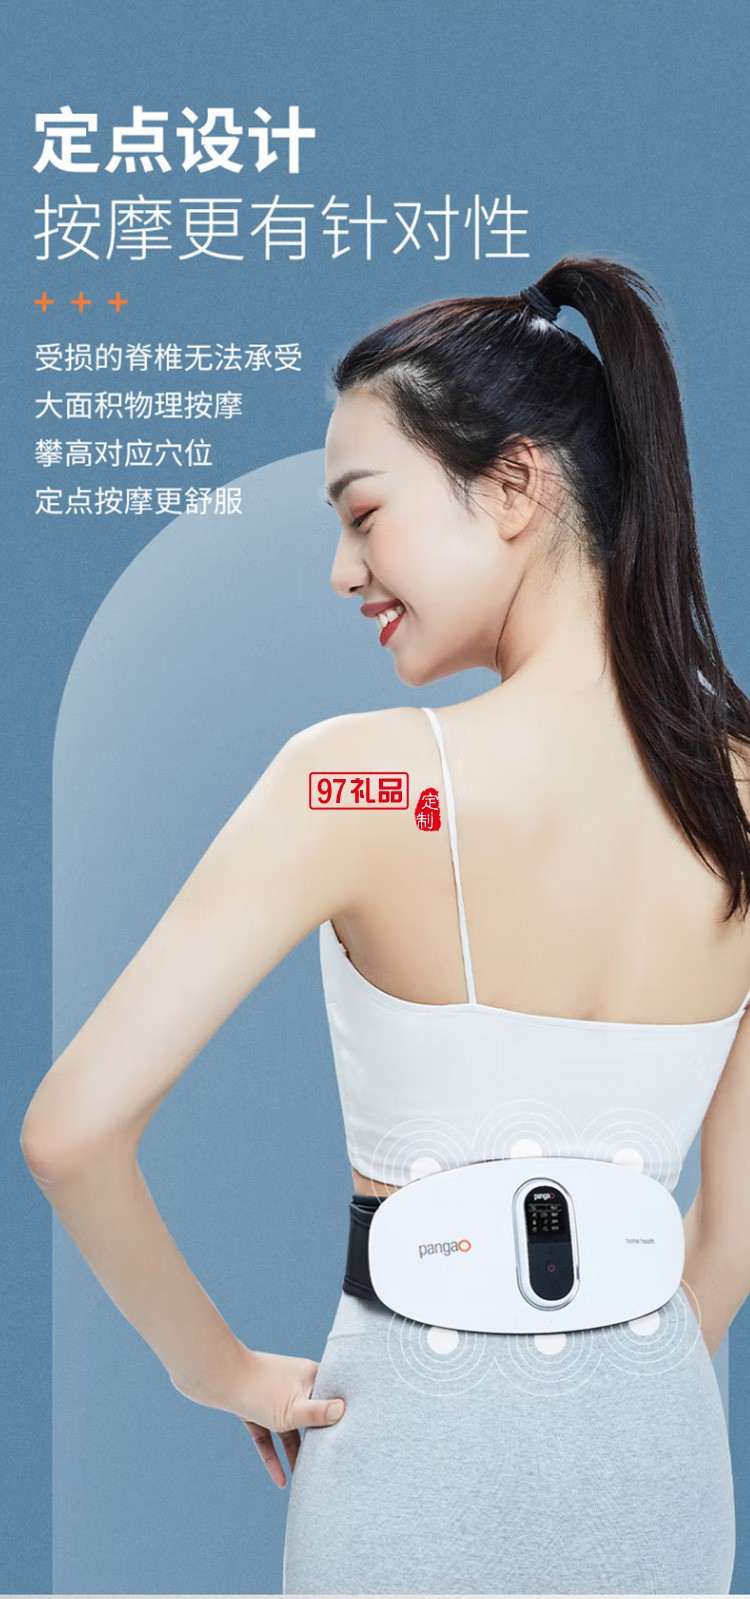 腰部按摩器 PG-2645L 腰椎按摩仪 热敷护腰带定制公司广告礼品